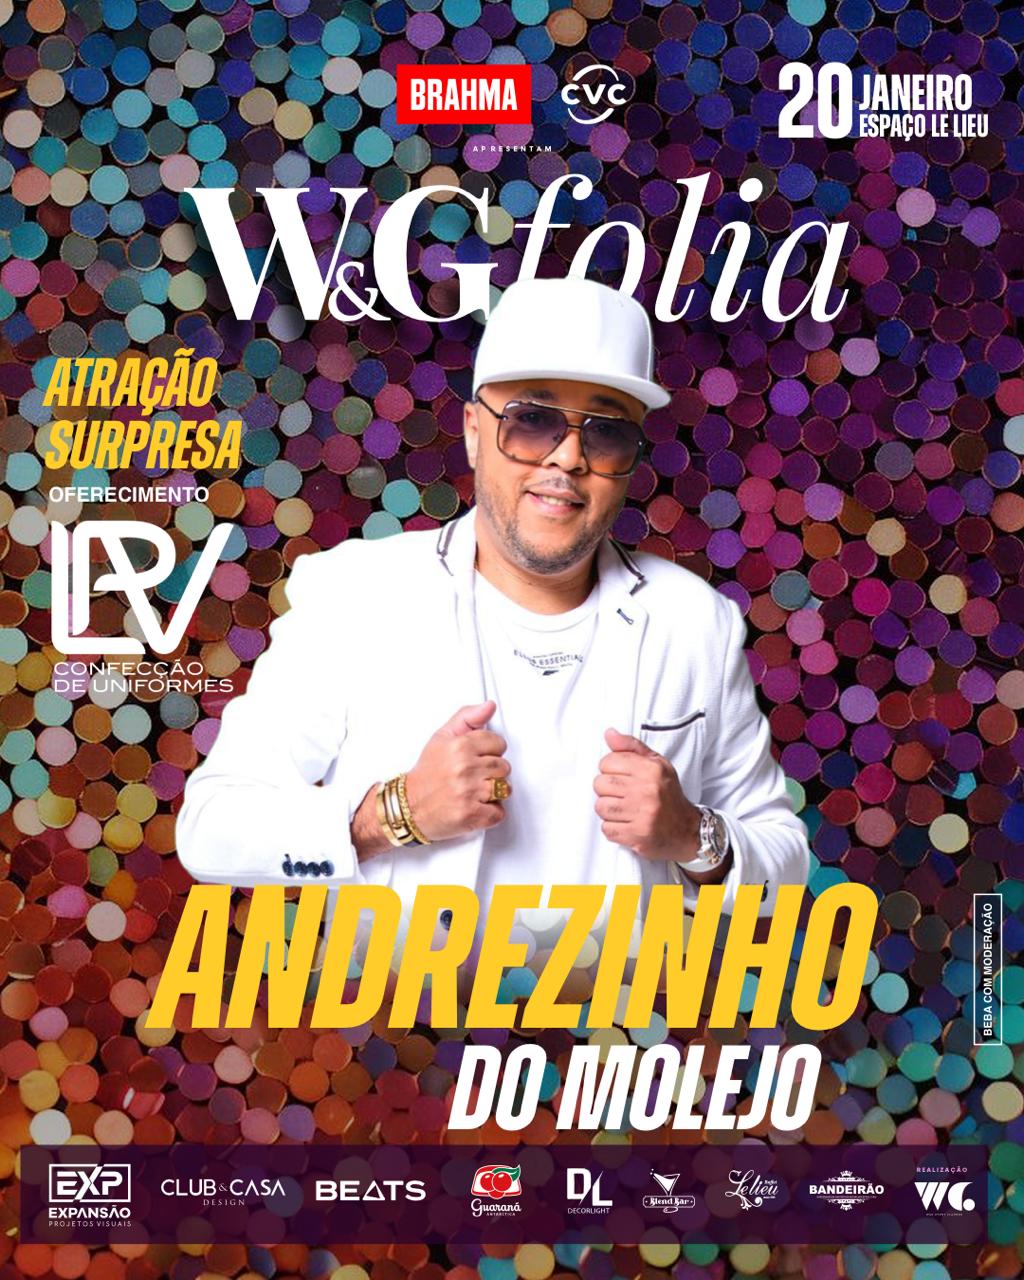 W&G Folia vende últimos ingressos e anuncia Andrezinho do Molejo como atração surpresa